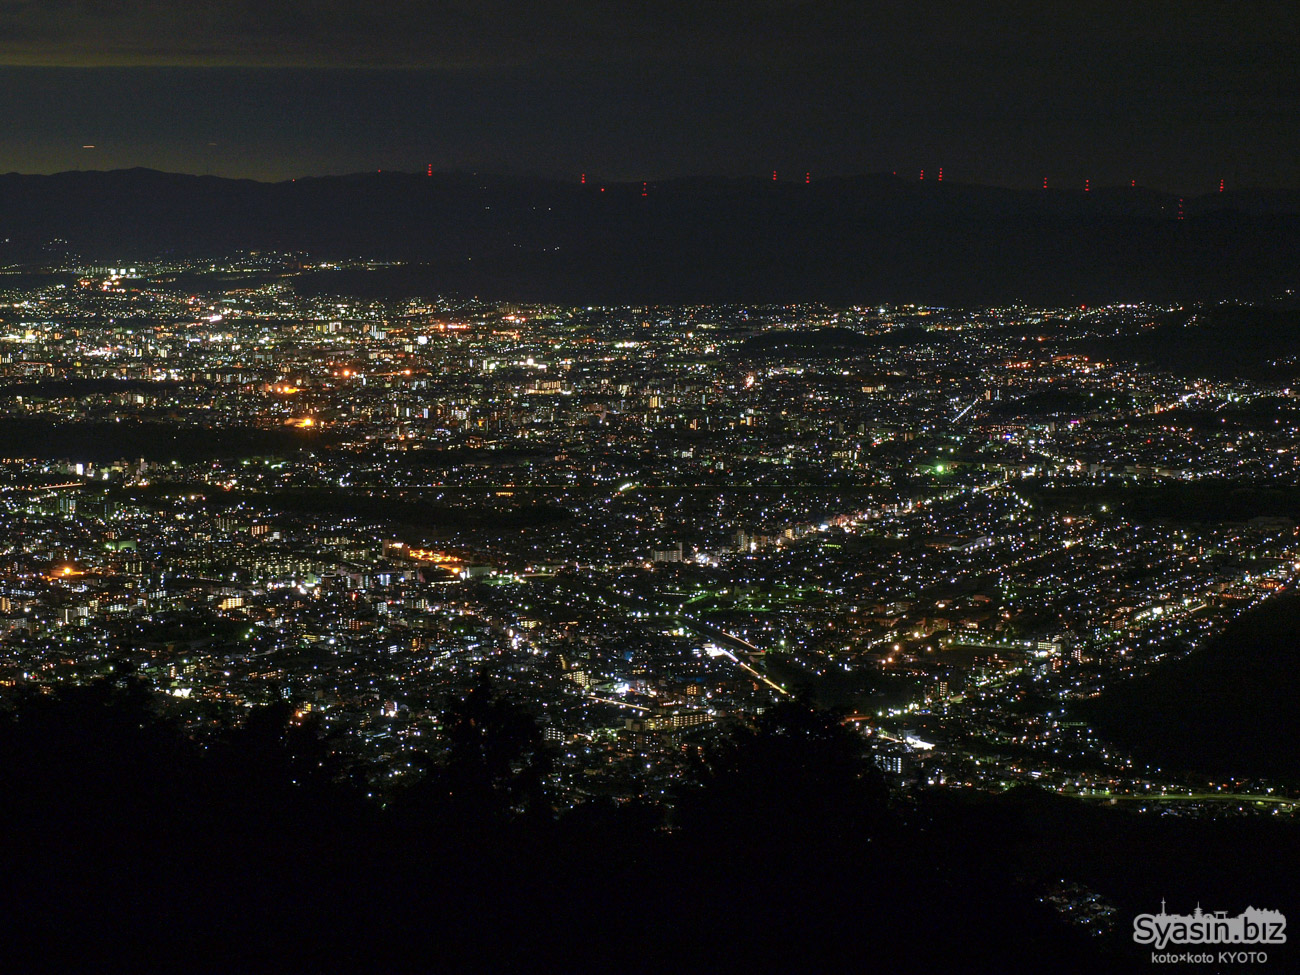 比叡山 パノラマ広場の夜景 – 京都市左京区